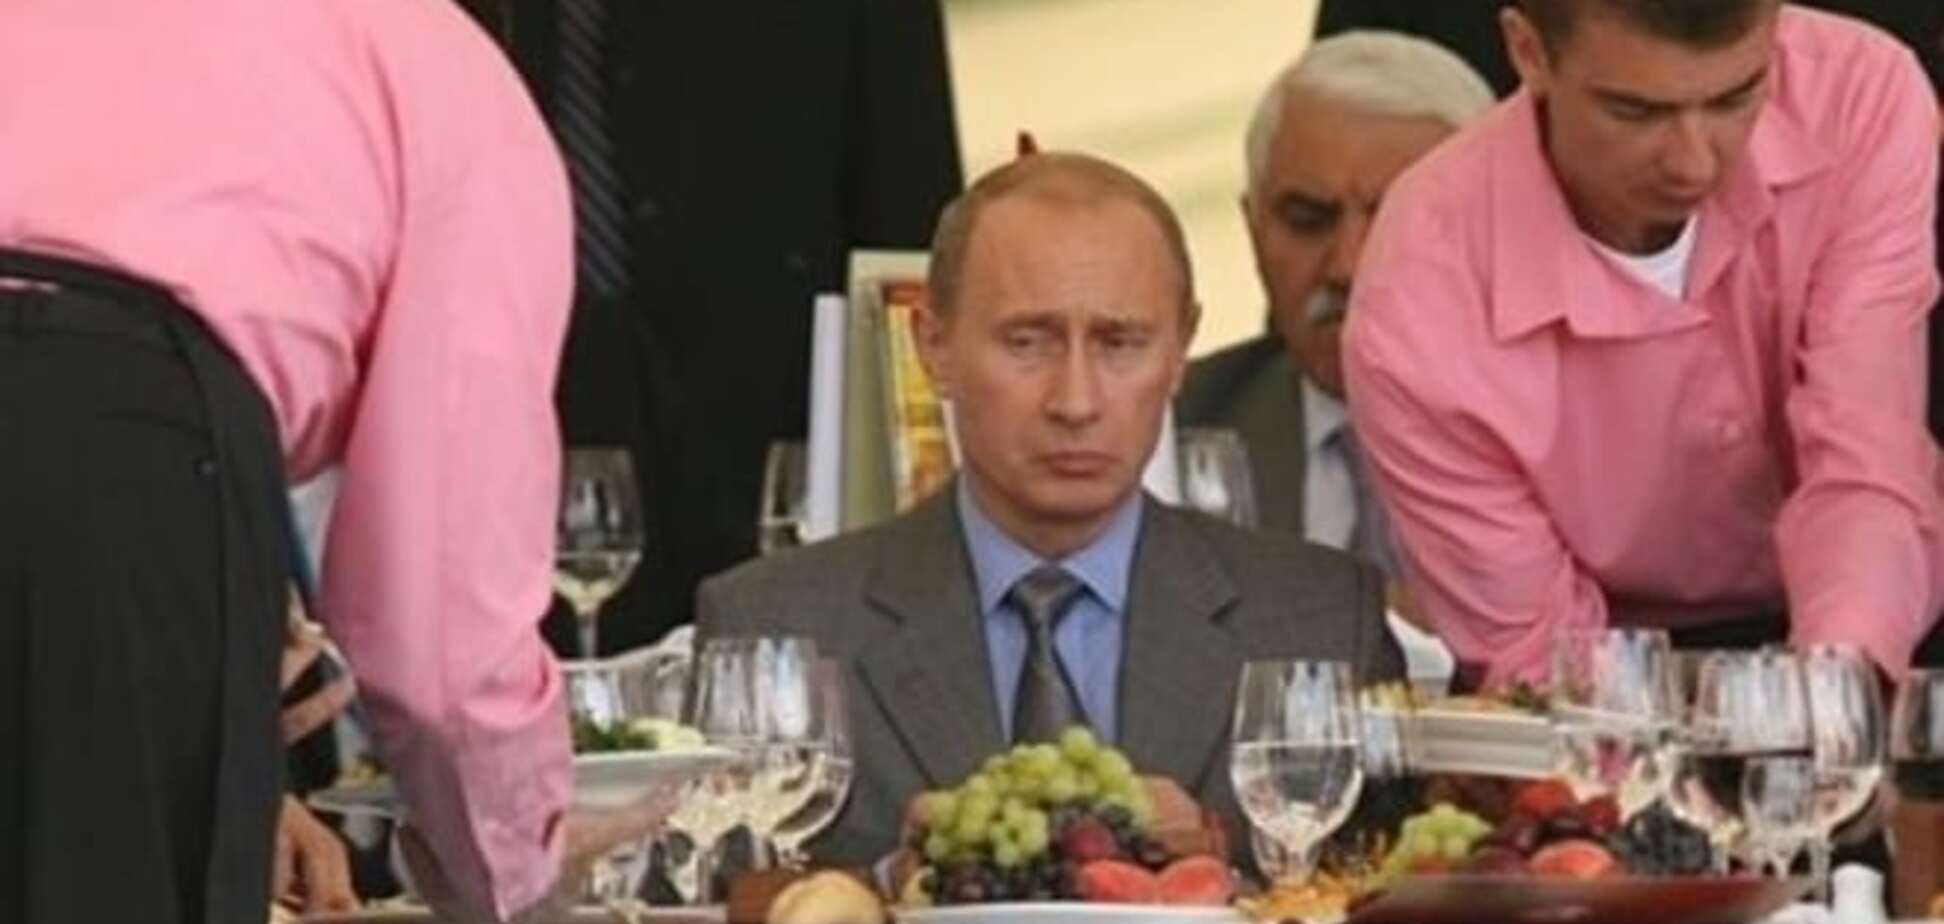 Der Spiegel пояснила, как война с едой открыла миру всю недееспособность Путина